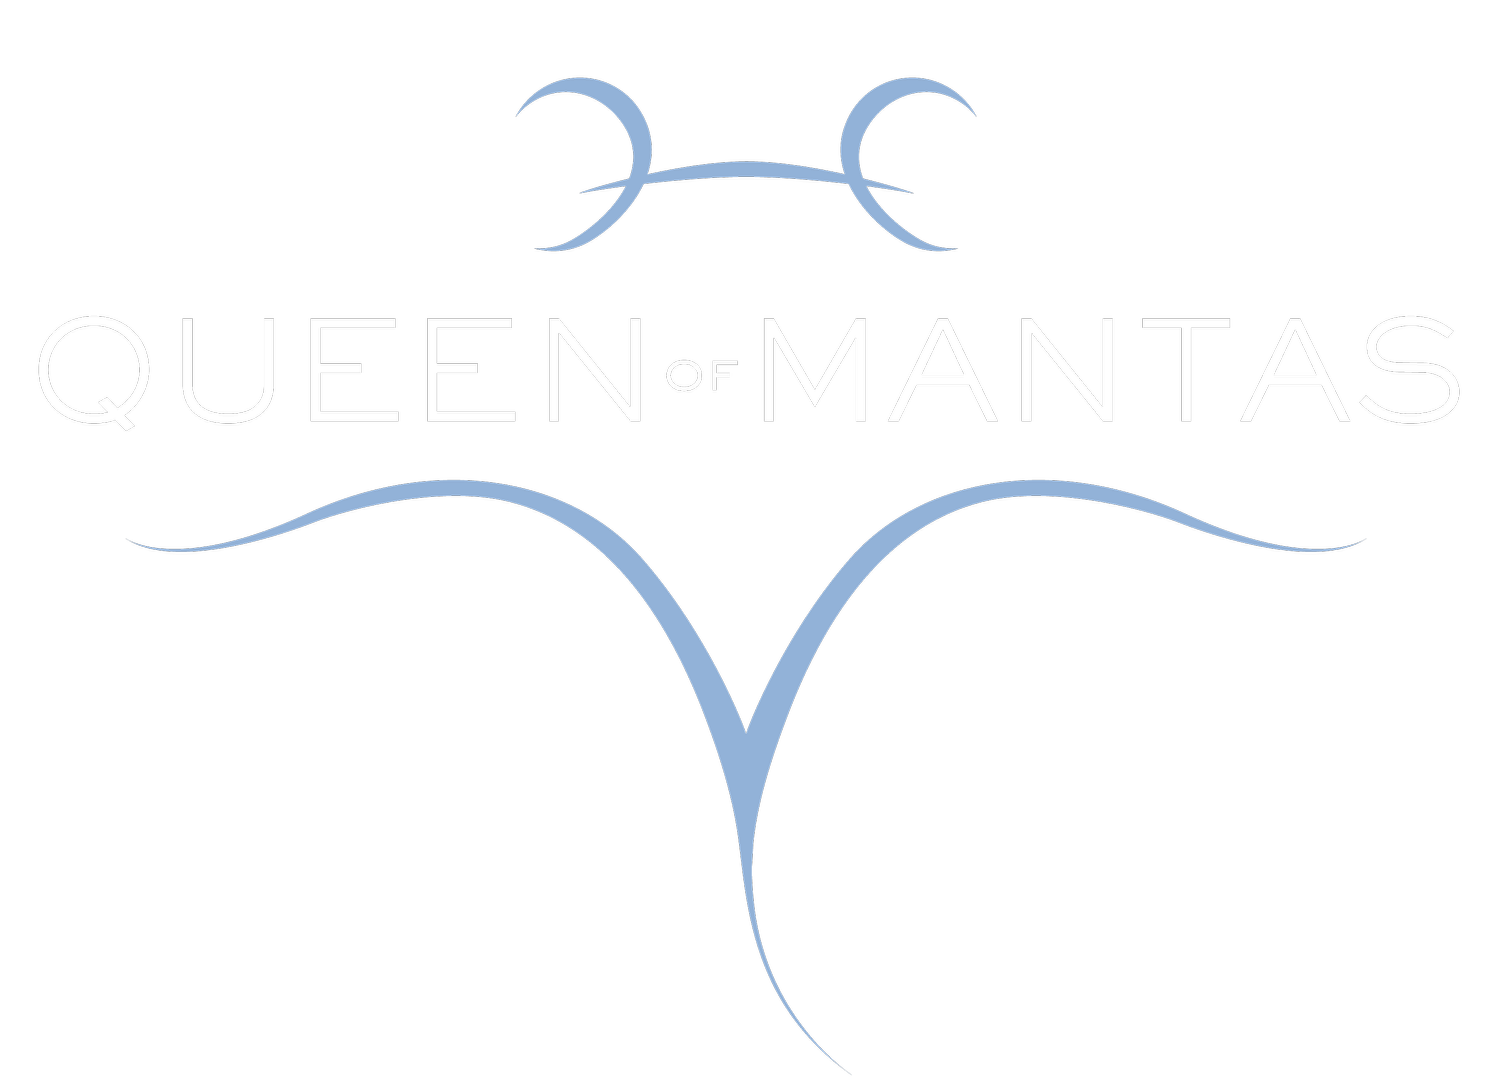 Queen of Mantas